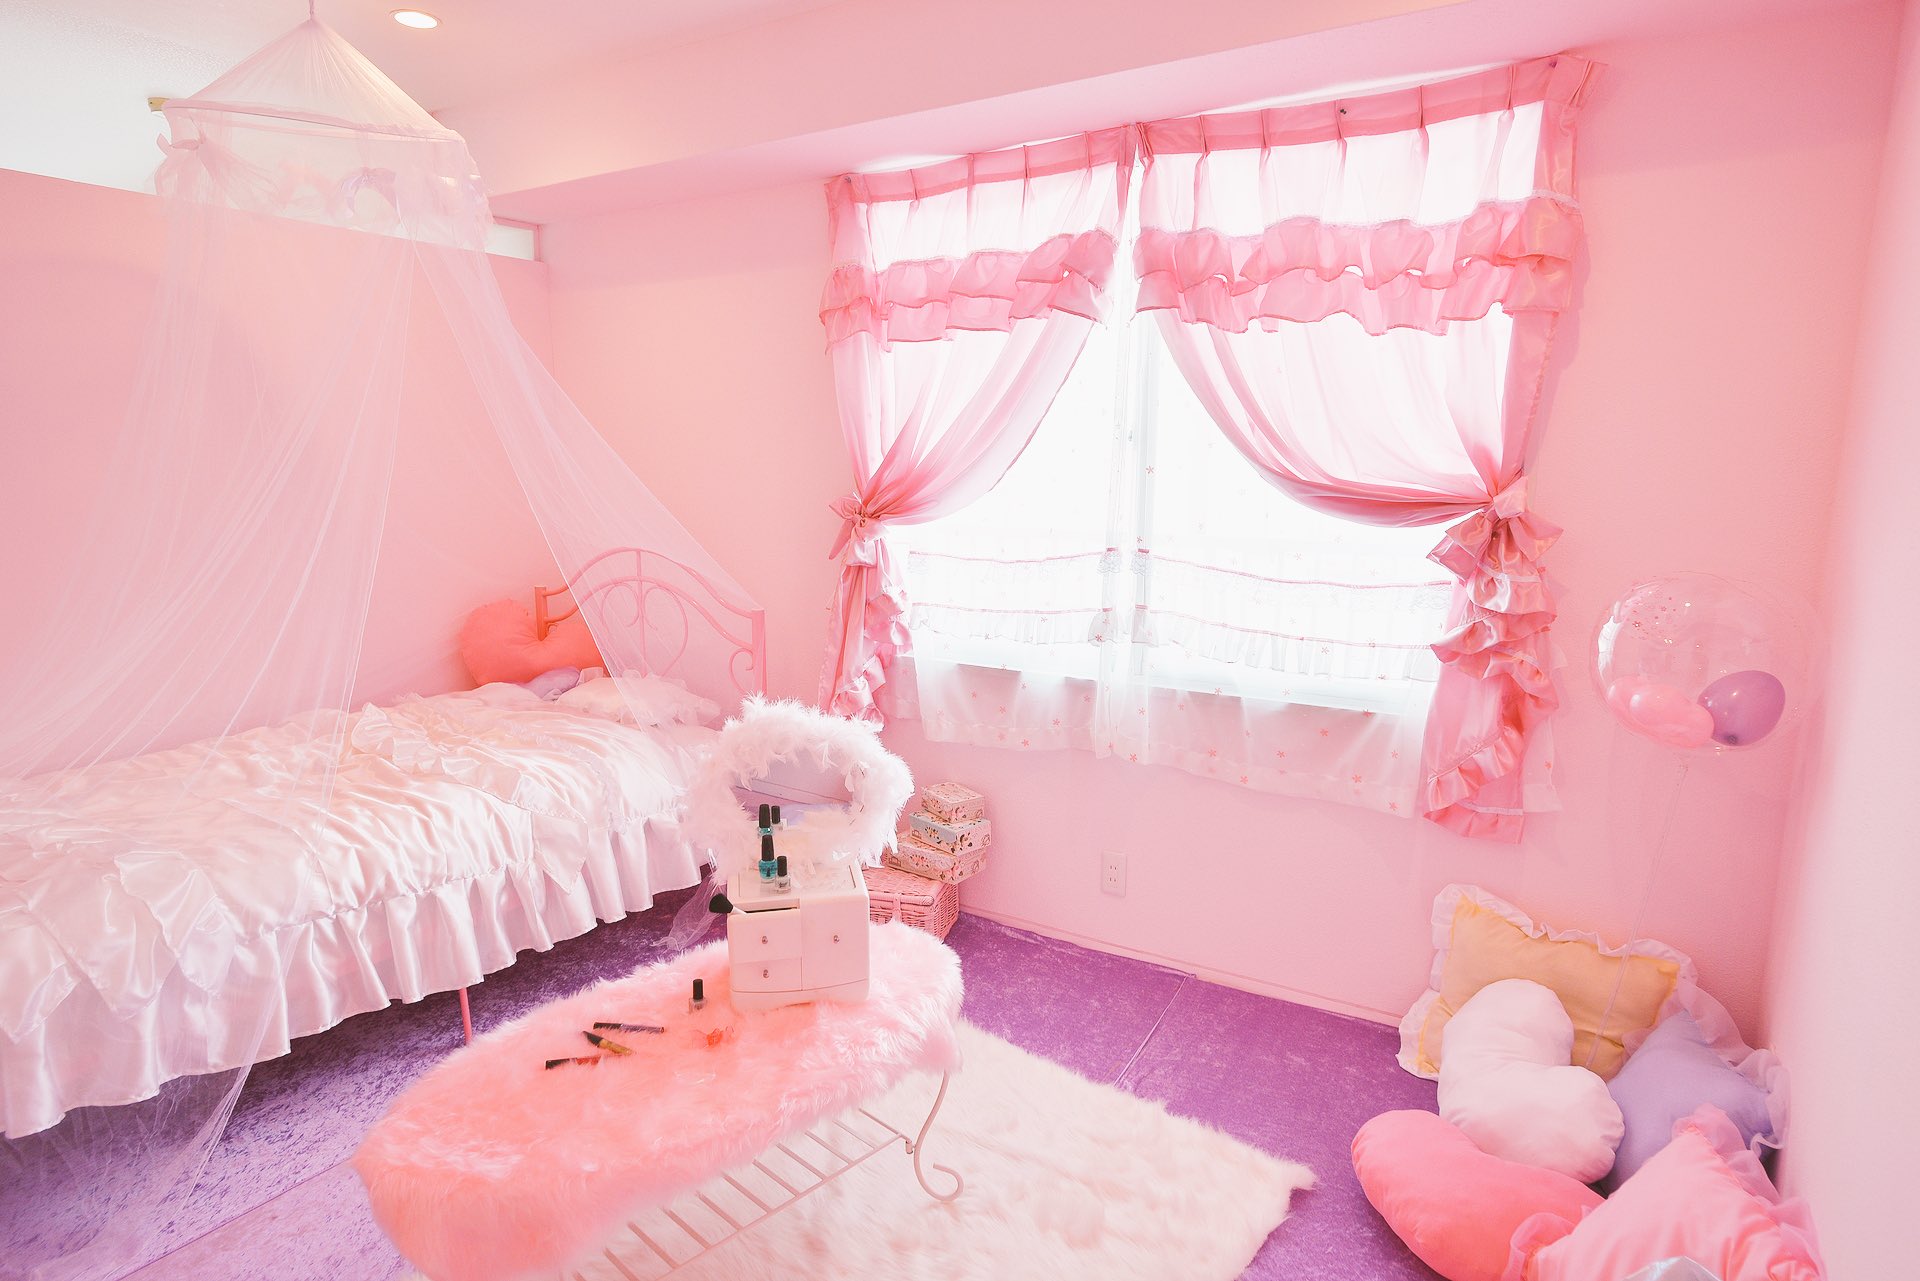 Reve コスプレスタジオ on Twitter "⭐️ブース紹介②⭐️ 女の子部屋🌈 ピンクが基調の可愛い女の子部屋になります🎀 もちろん